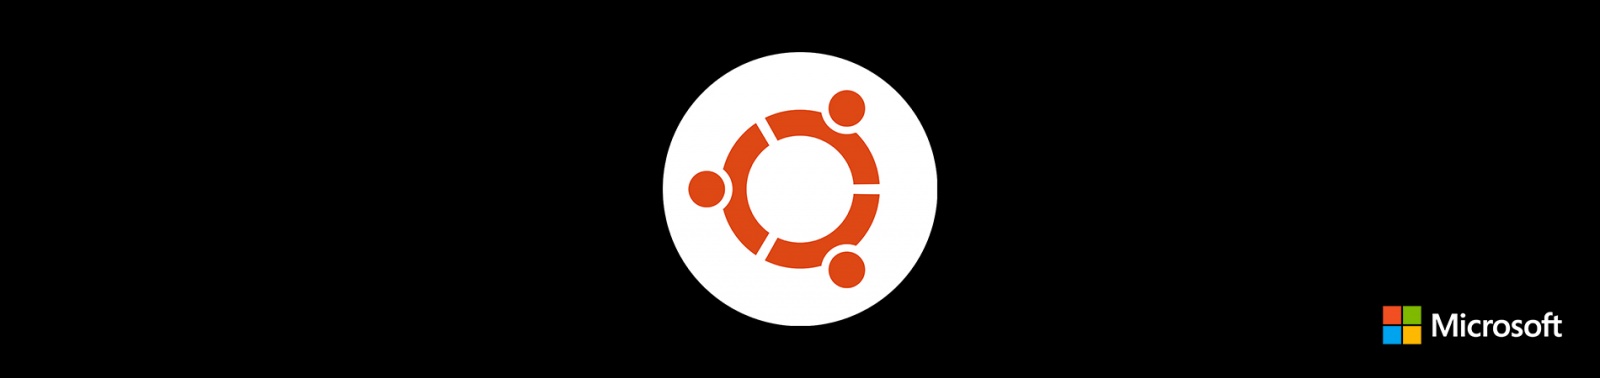 Запуск контейнеров с Ubuntu на Windows - 1